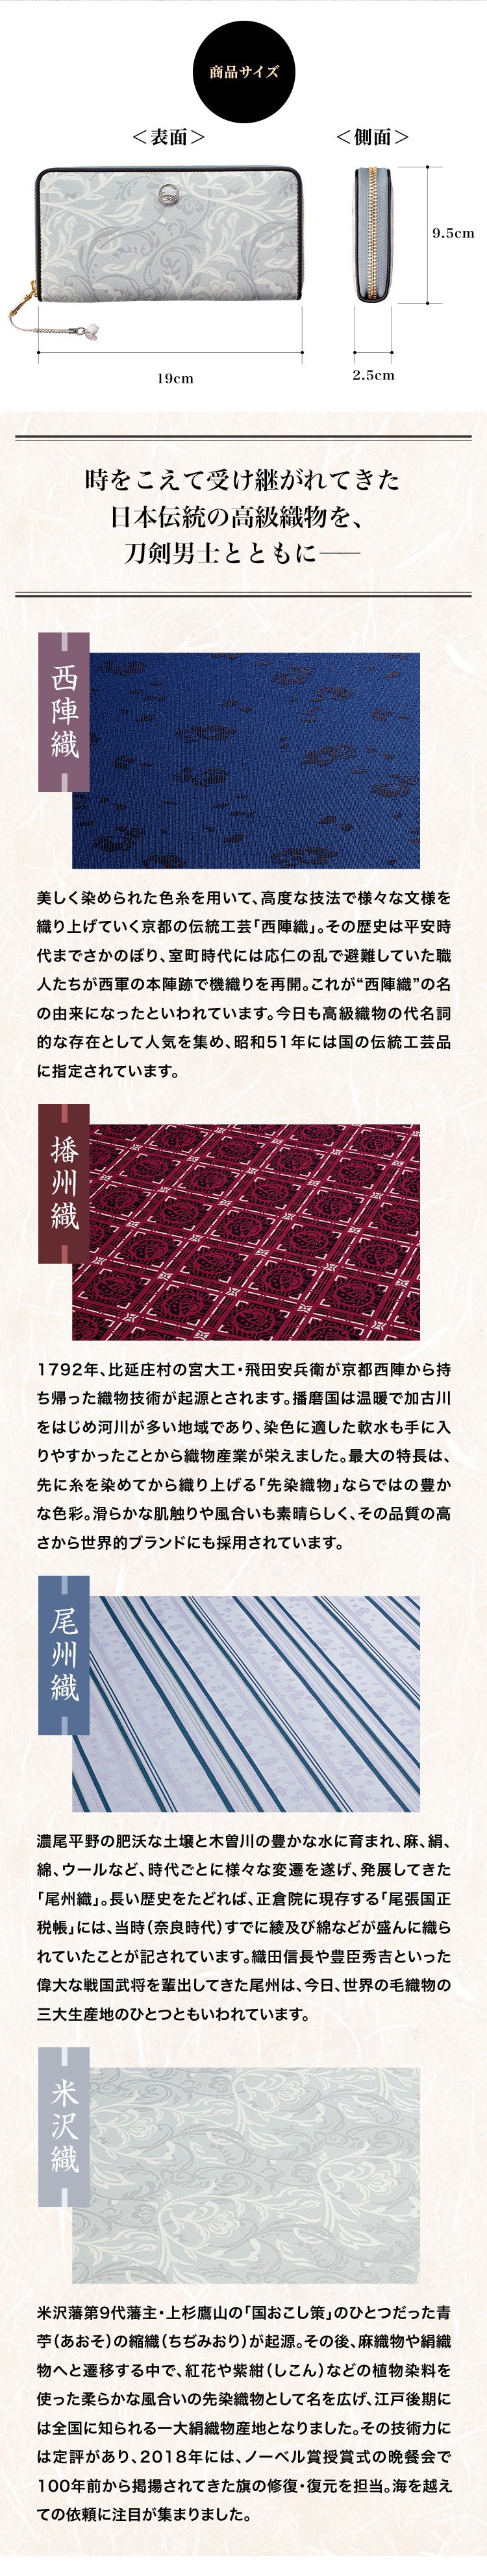 時をこえて受け継がれてきた日本伝統の高級織物を、刀剣男士とともに――